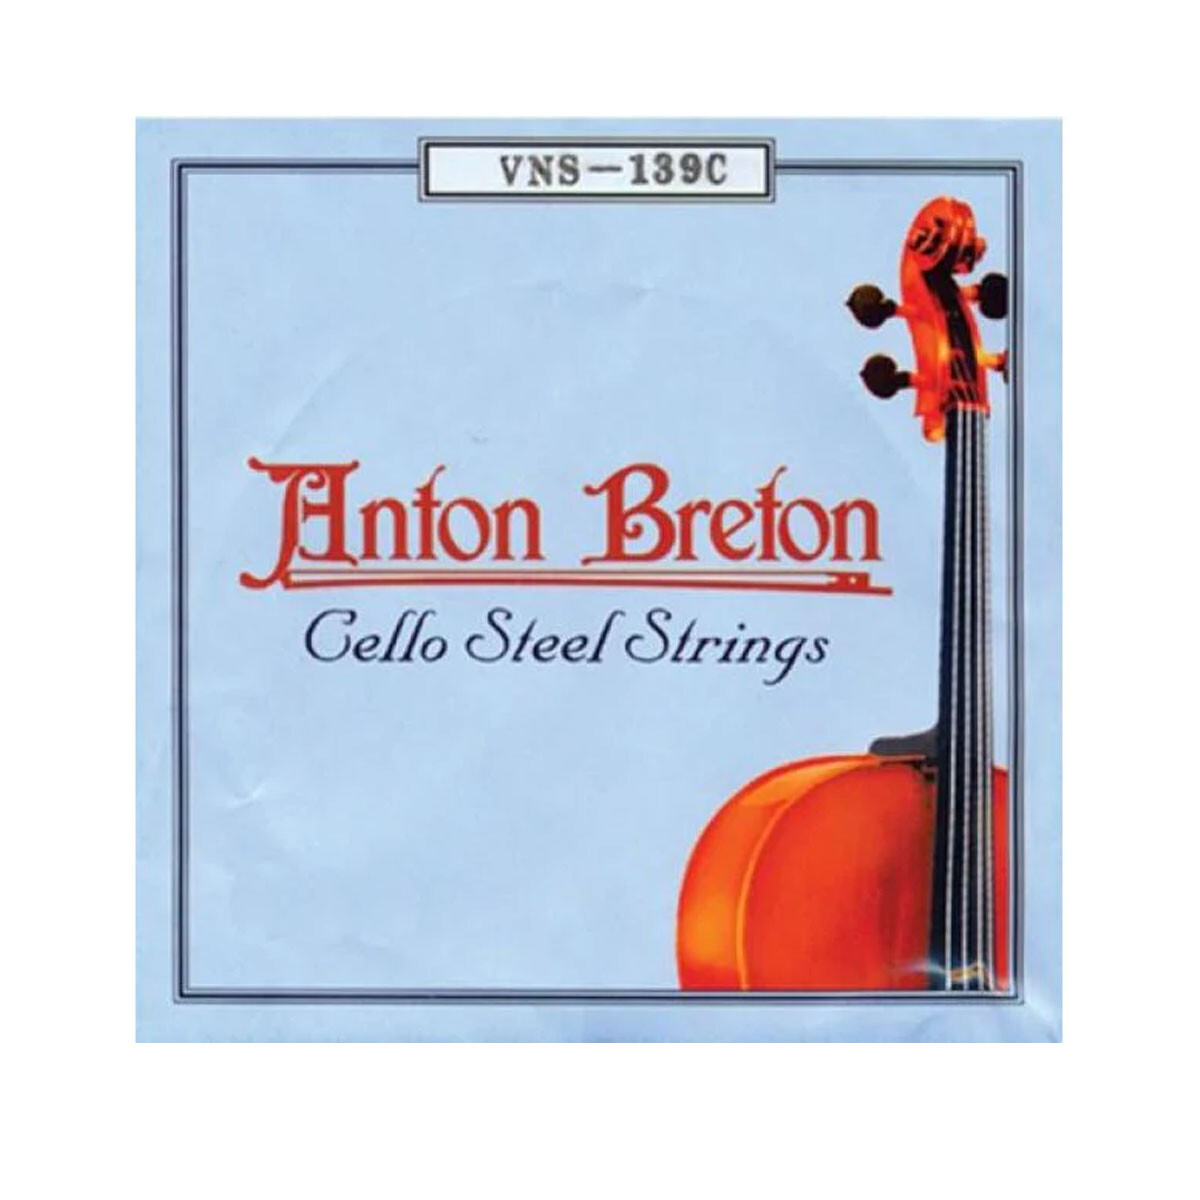 Encordado Cello Breton Vns139c 